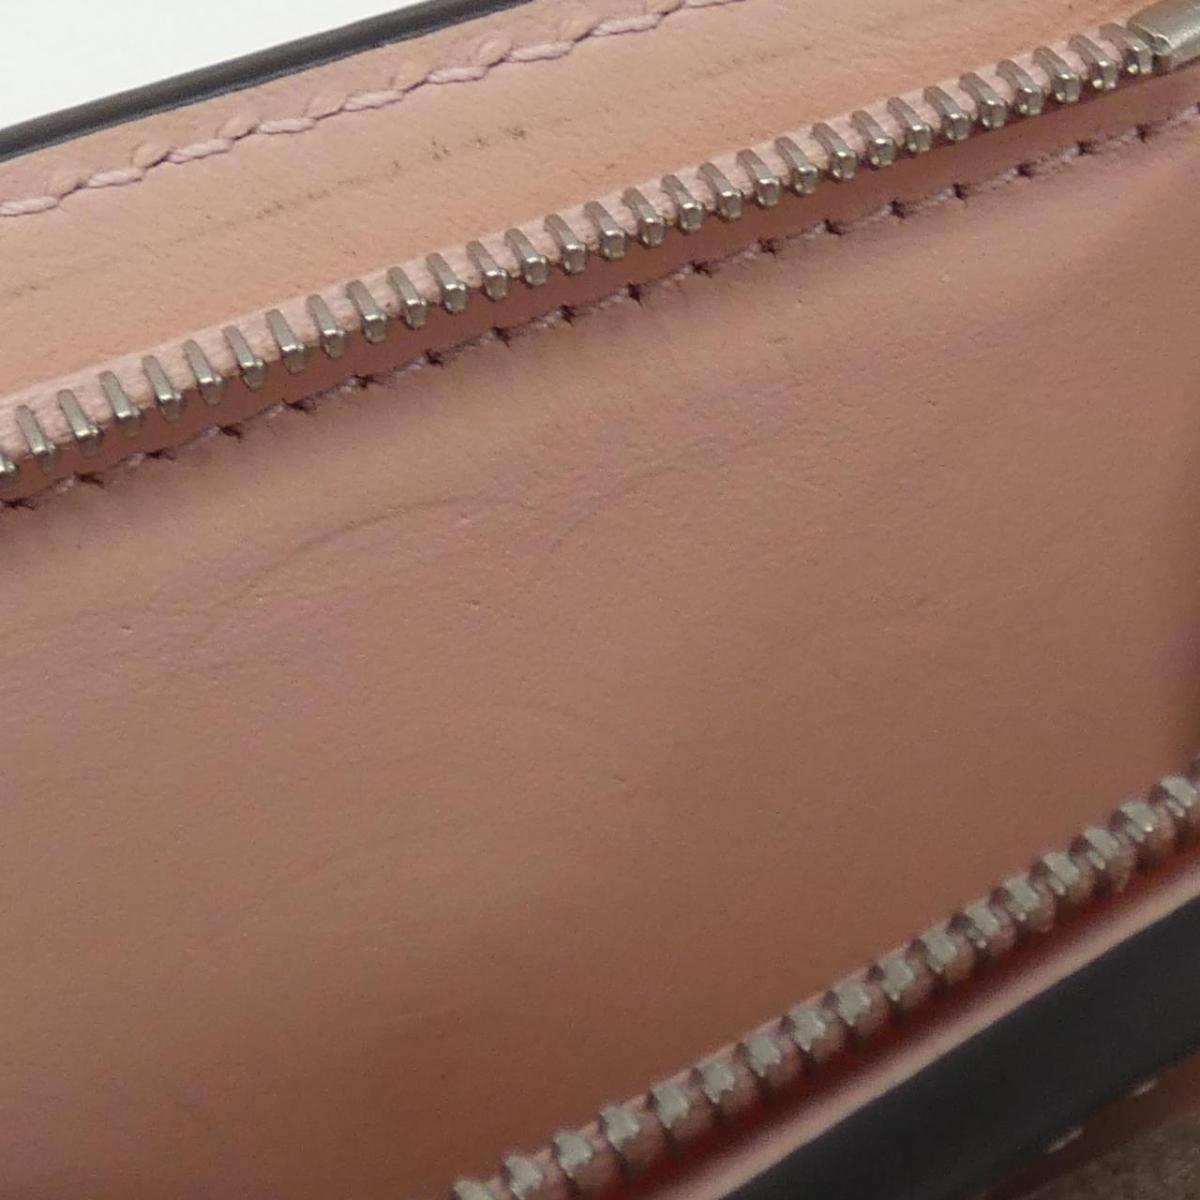 Louis Vuitton Machina Portefolio Illis XS M82365 Wallet